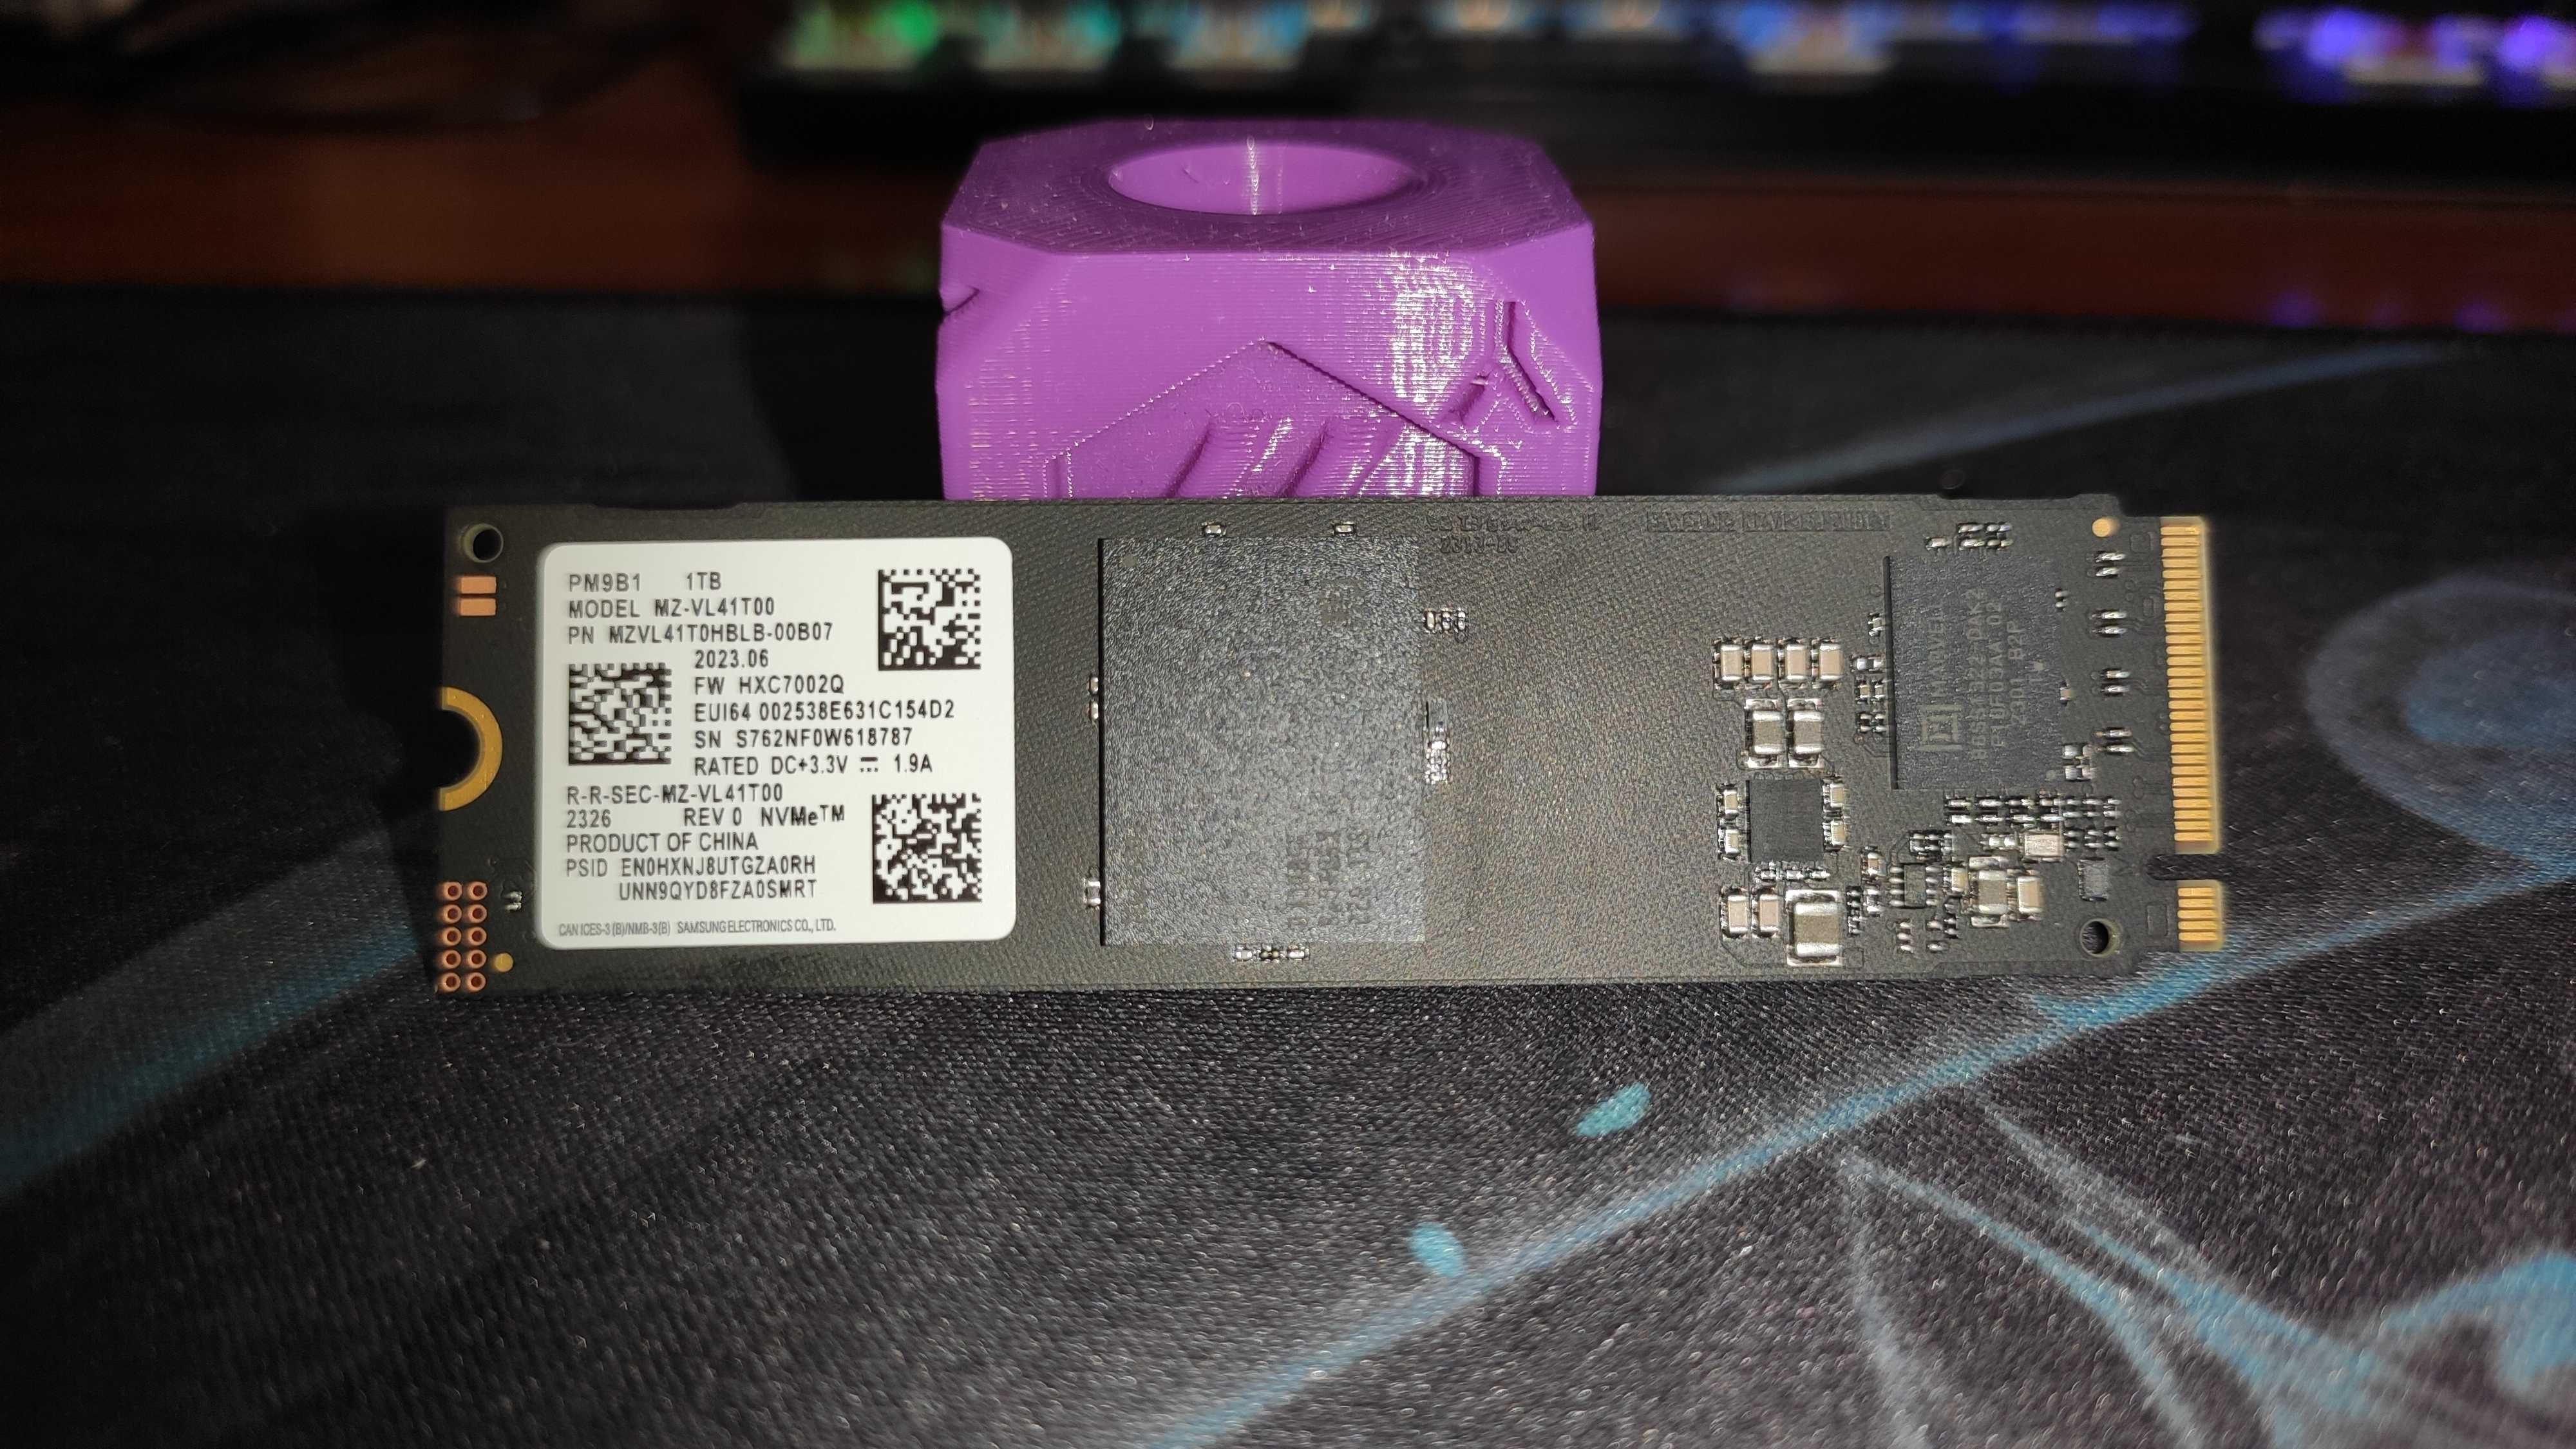 SSD накопичувач Samsung PM9B1 1TB (MZVL41T0HBLB-00B07)